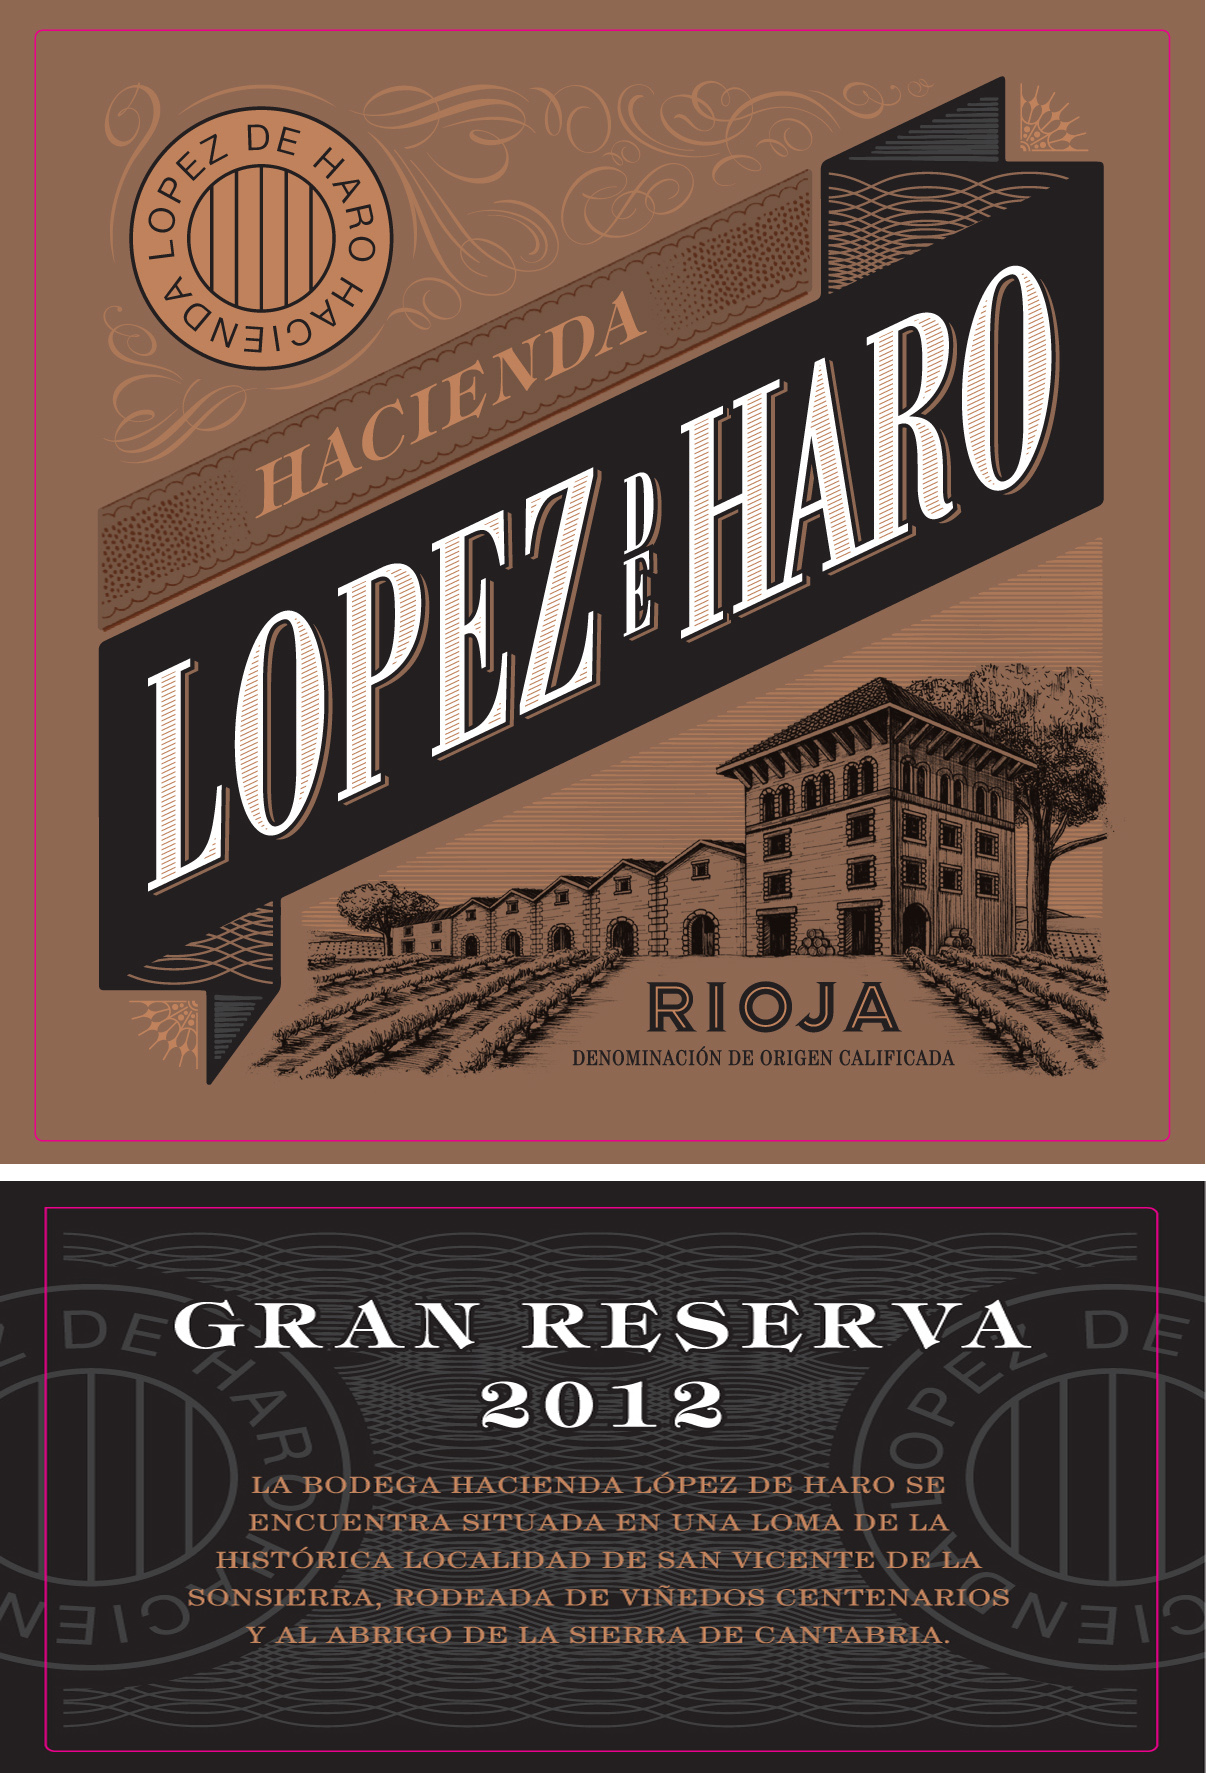 Hacienda Lopez de Haro - Gran Reserva label